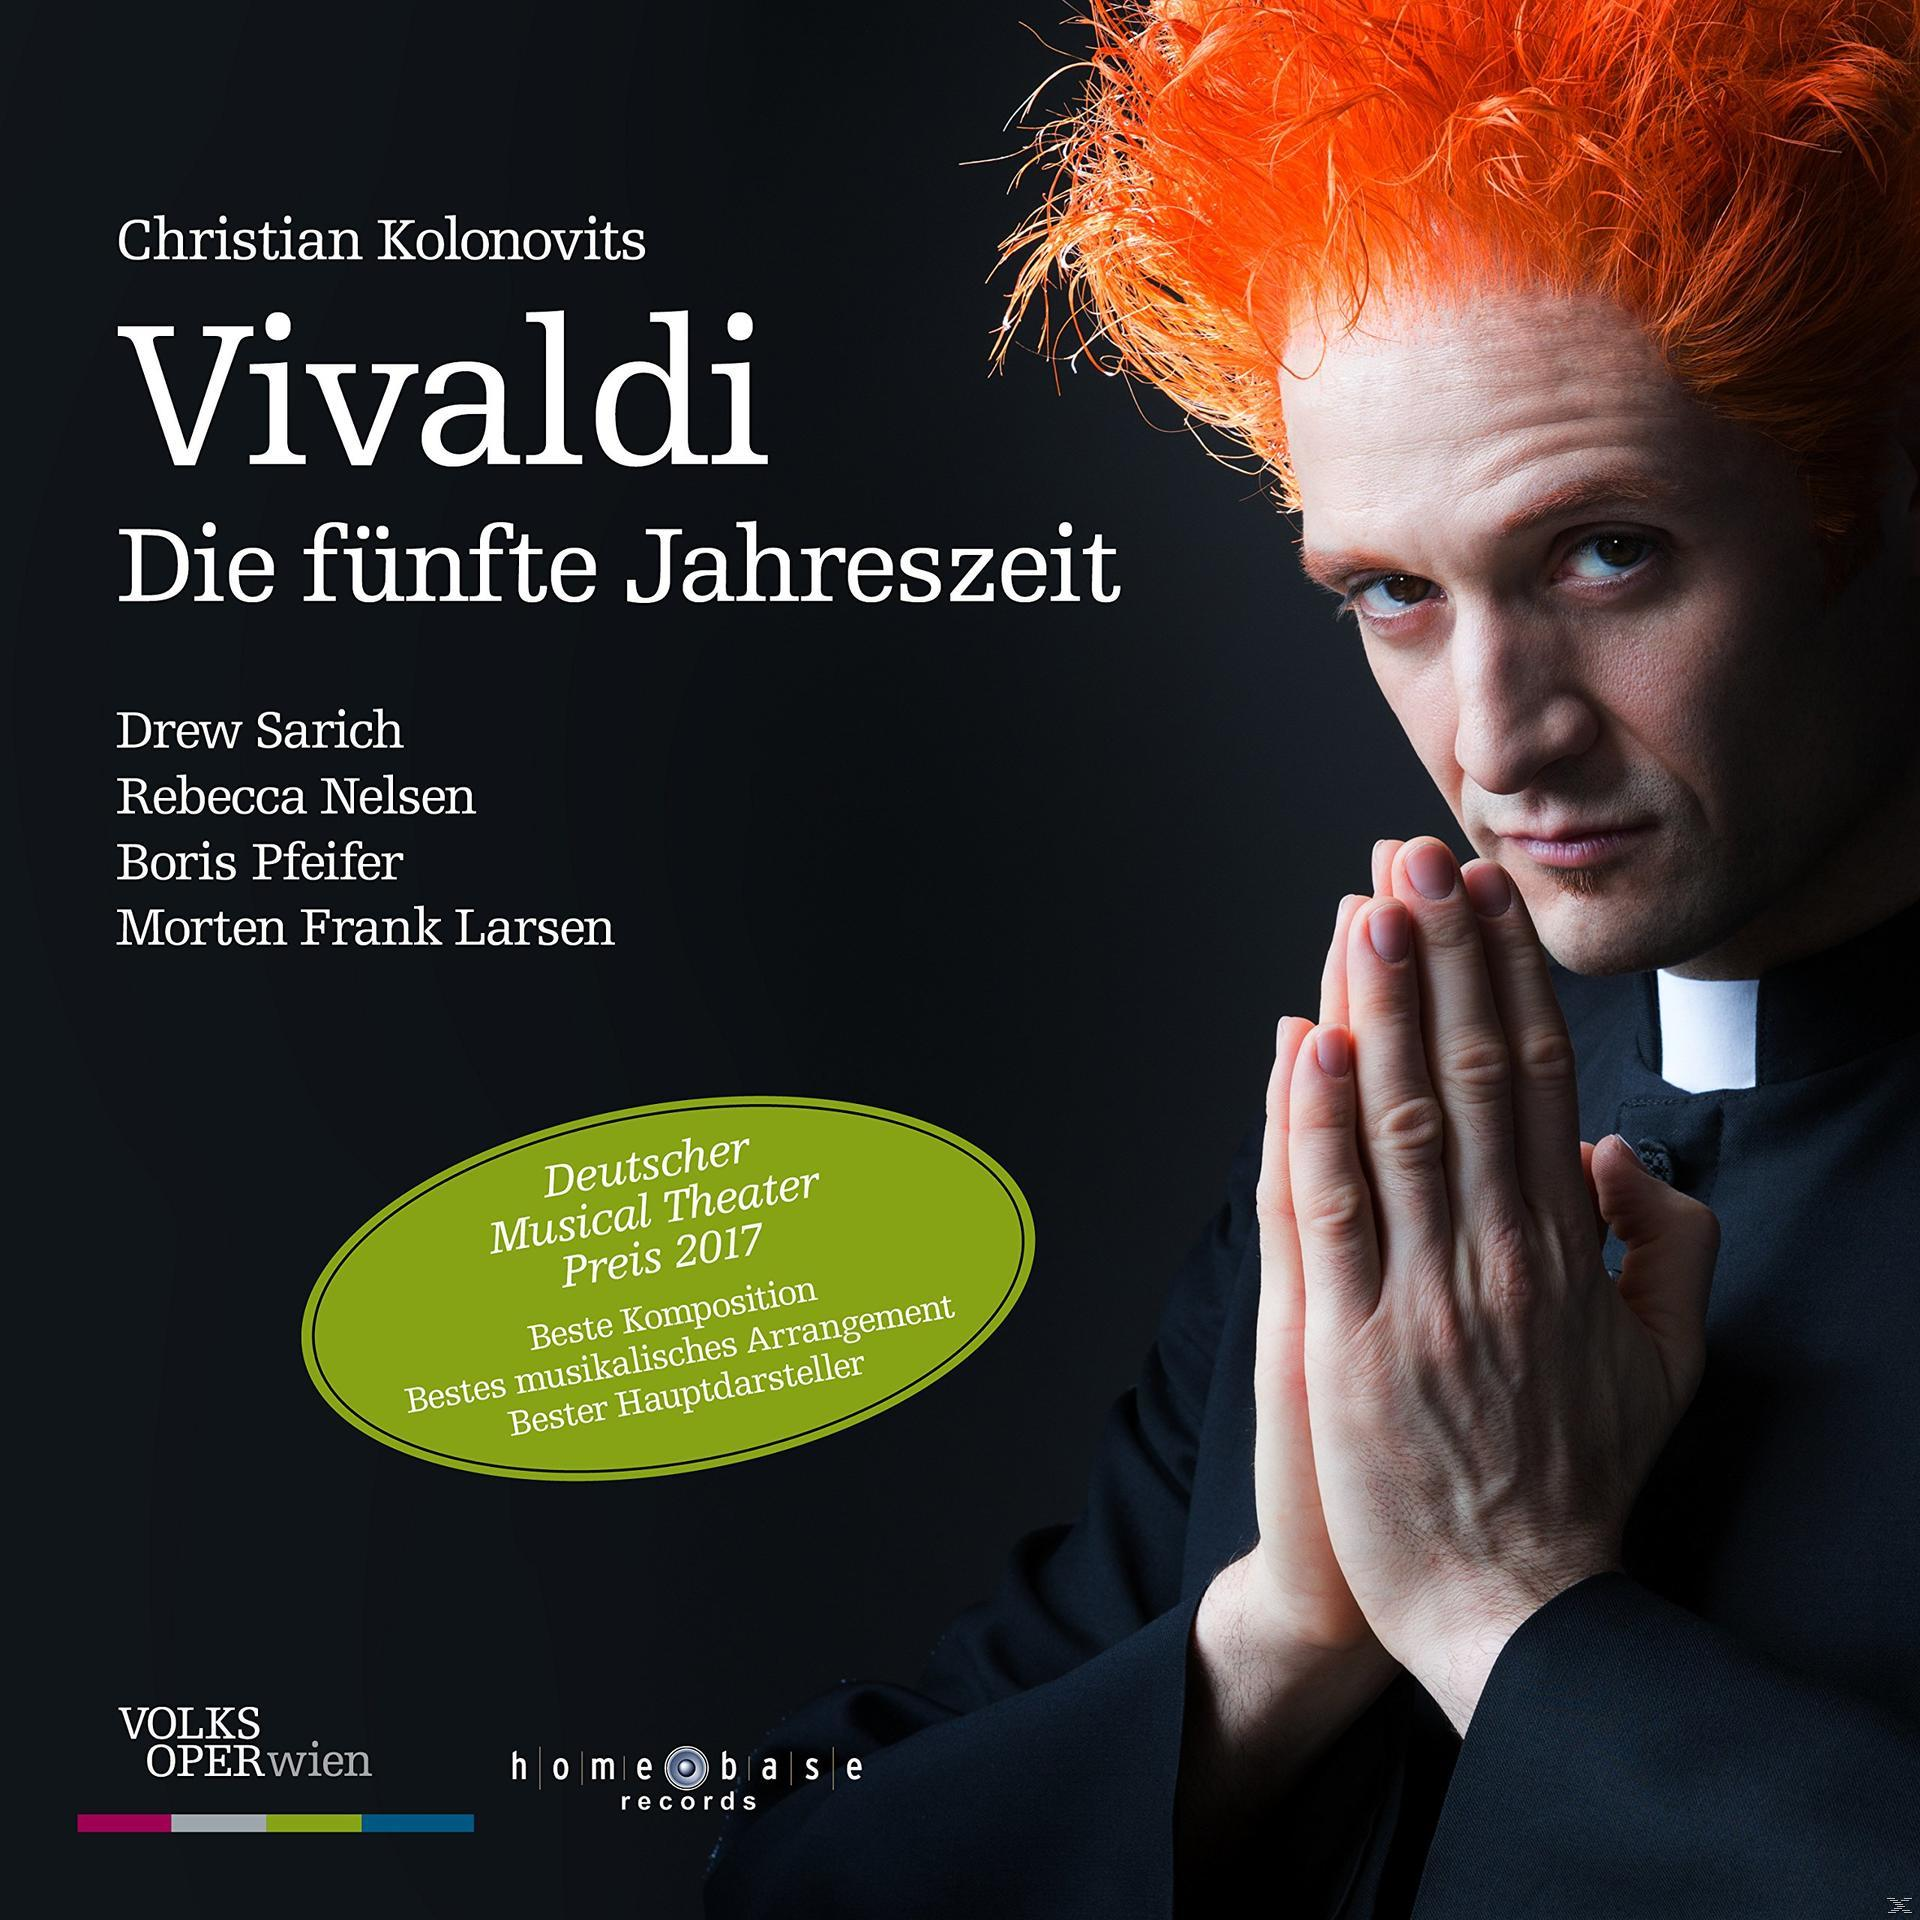 VARIOUS - Vivaldi fünfte (CD) Jahreszeit - Die 